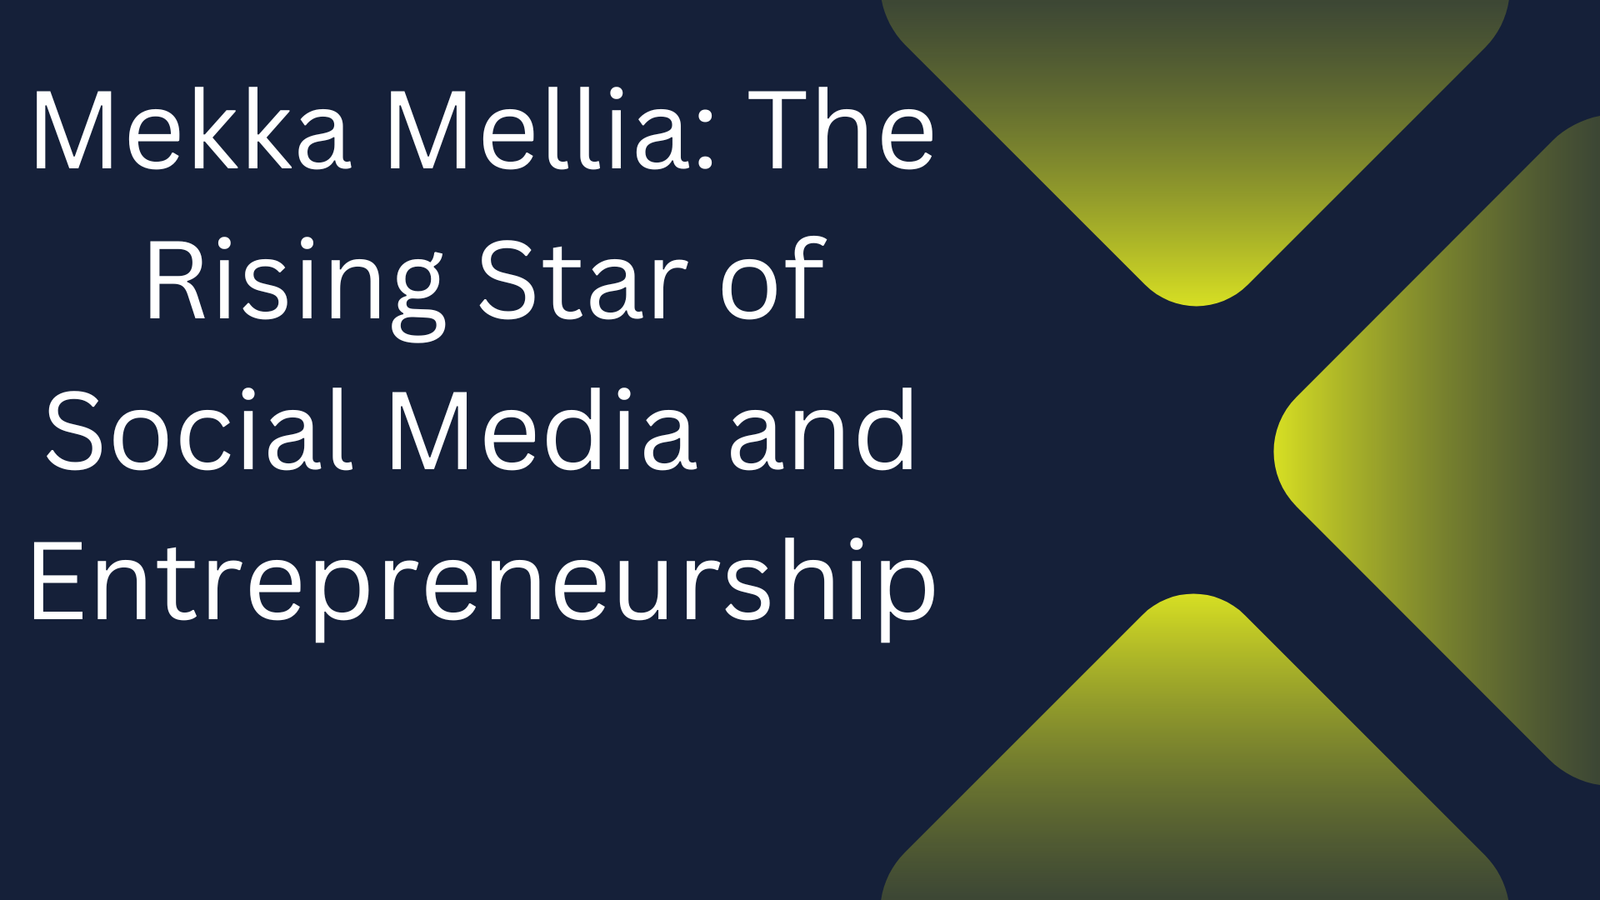 Mekka Mellia: The Rising Star of Social Media and Entrepreneurship